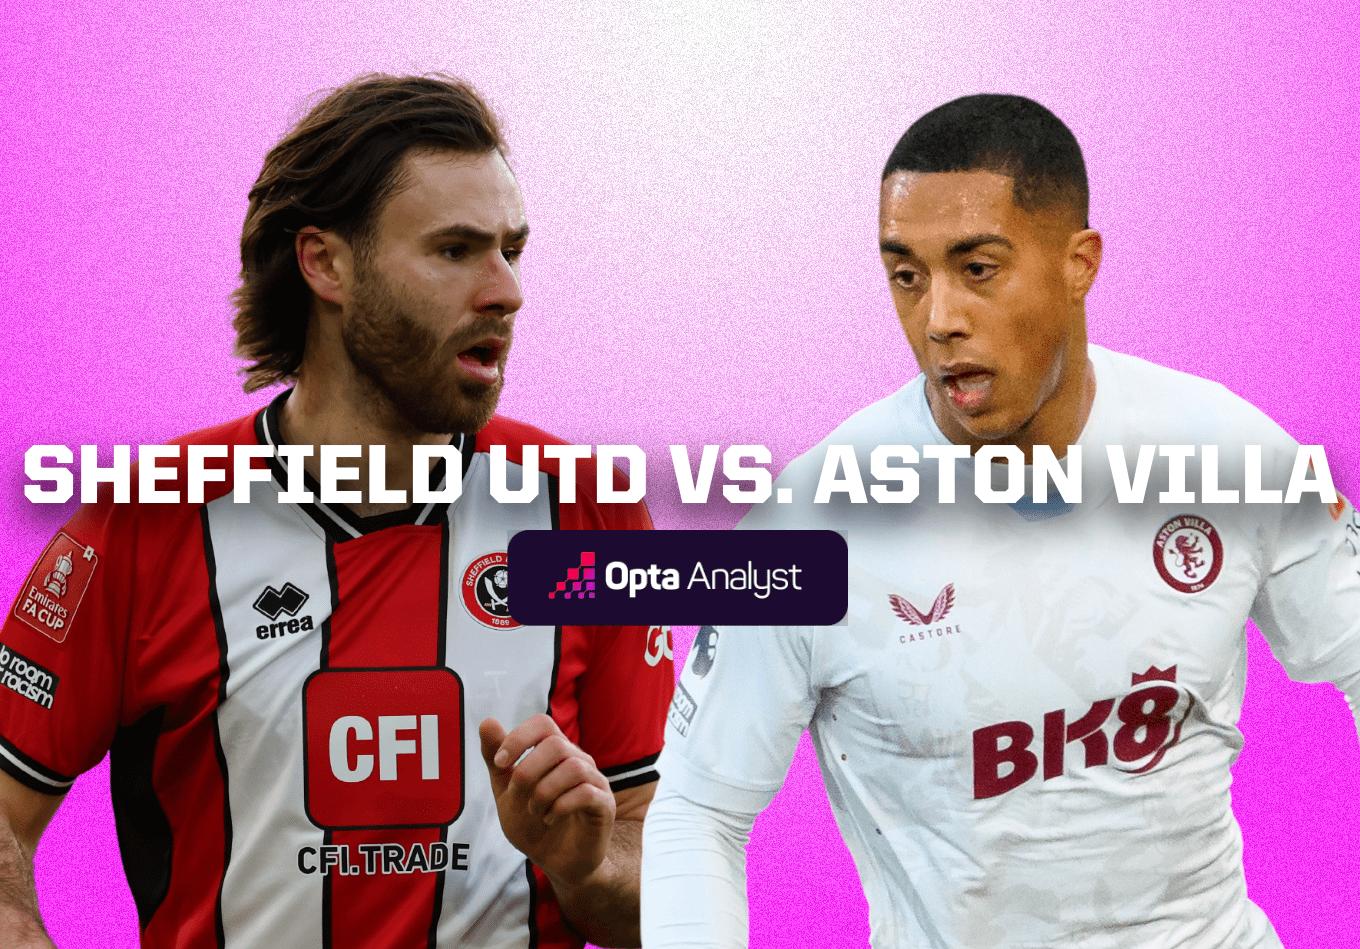 Sheffield United vs Aston Villa: Prediction and Preview